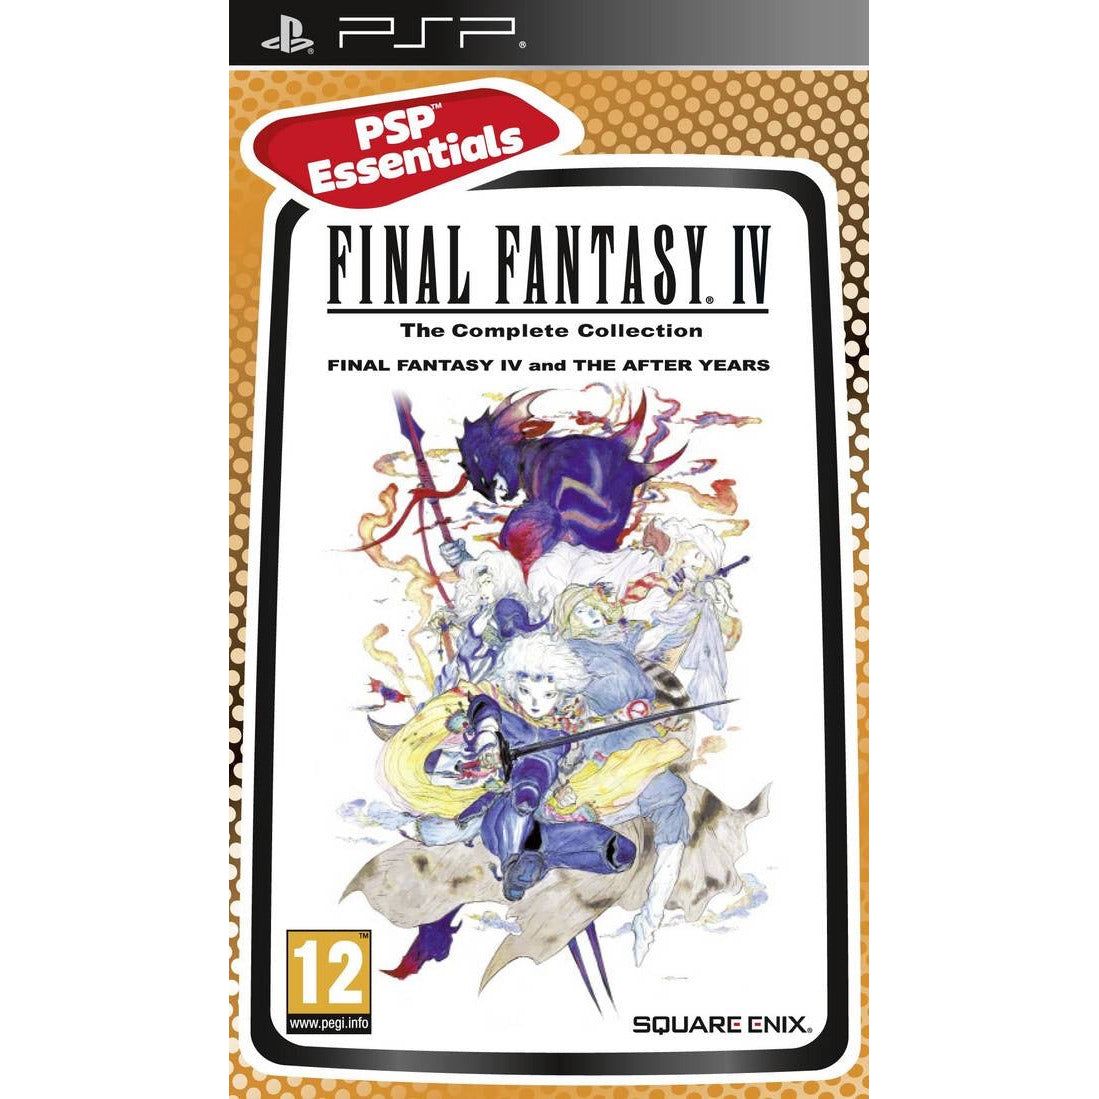 PSP - Final Fantasy IV La Collection Complète (En Cas) (PAL)